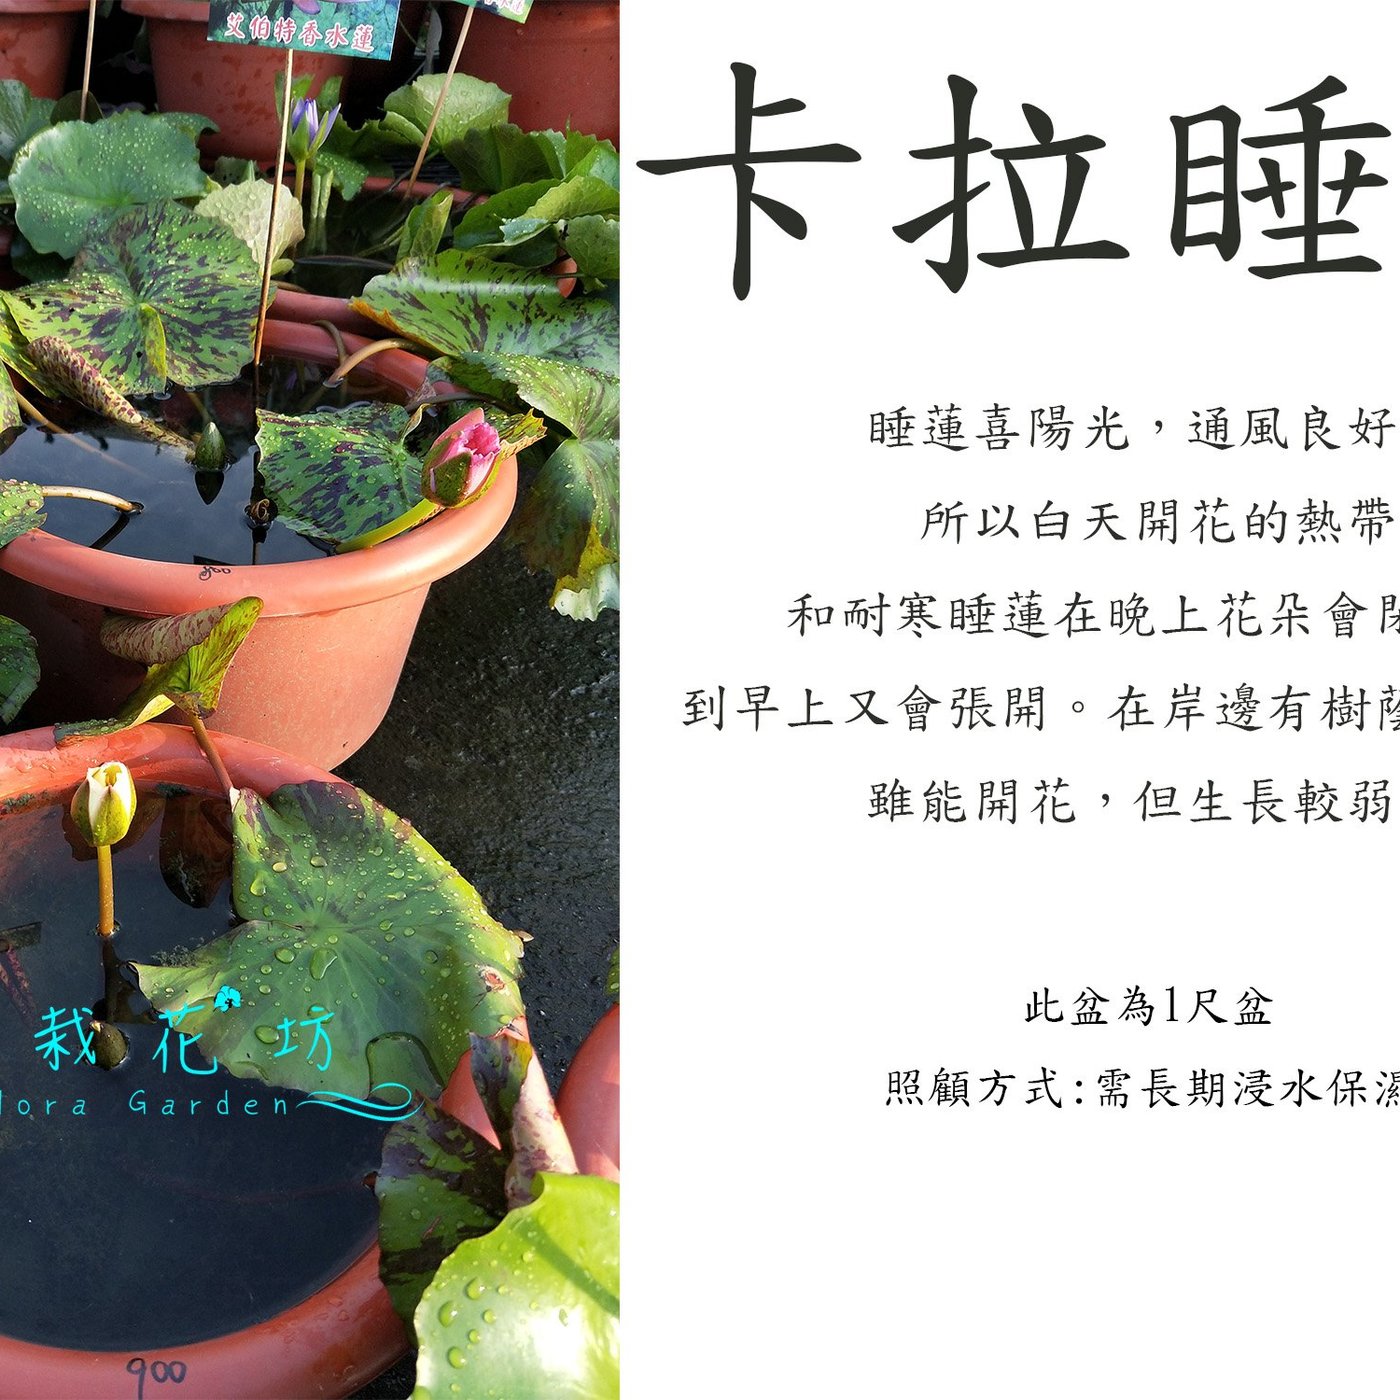 心栽花坊 卡拉睡蓮 睡蓮 1尺吋盆 水生植物 觀花植物 售價900特價700 Yahoo奇摩拍賣